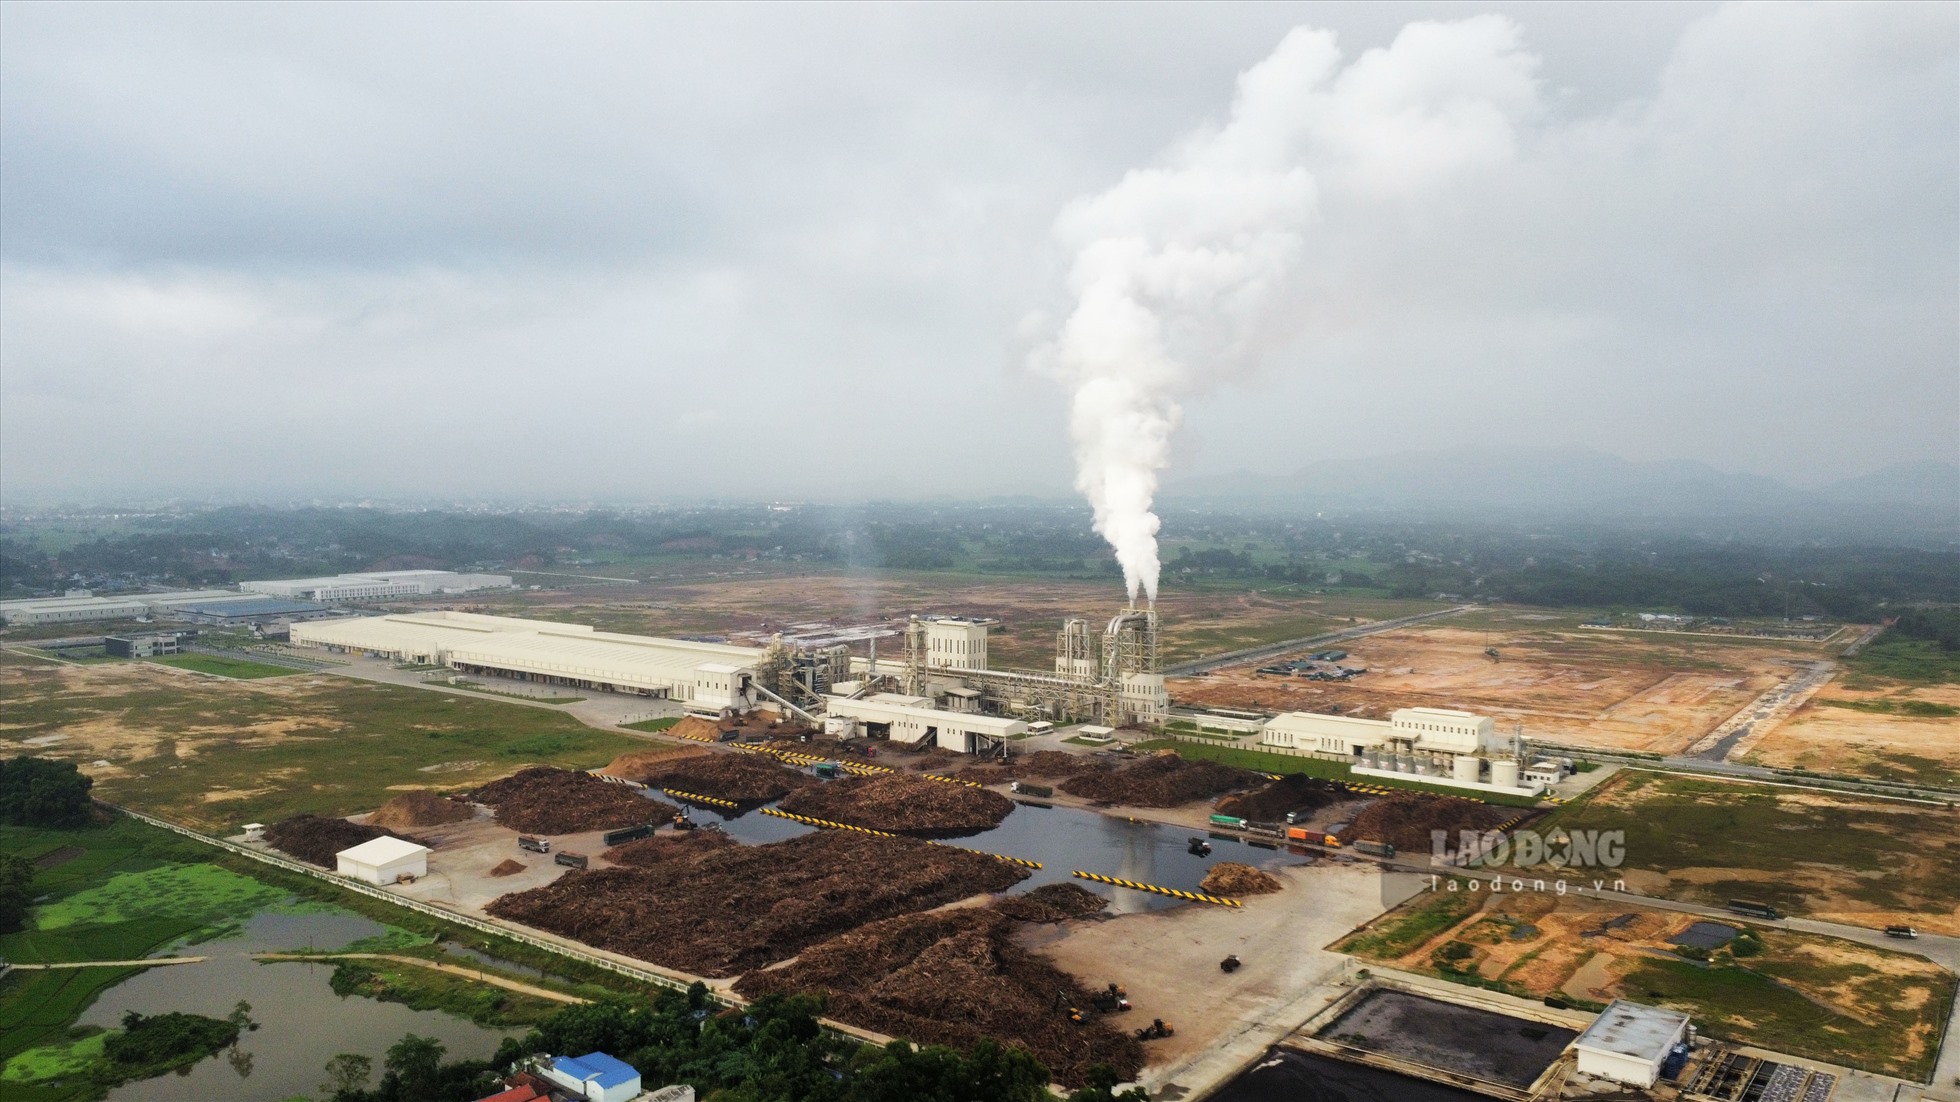 Khu công nghiệp Sông Công (TP. Sông Công, Thái Nguyên) cũng đang hoàn thiện hệ thống xử lý nước thải. Ảnh: Nguyễn Tùng